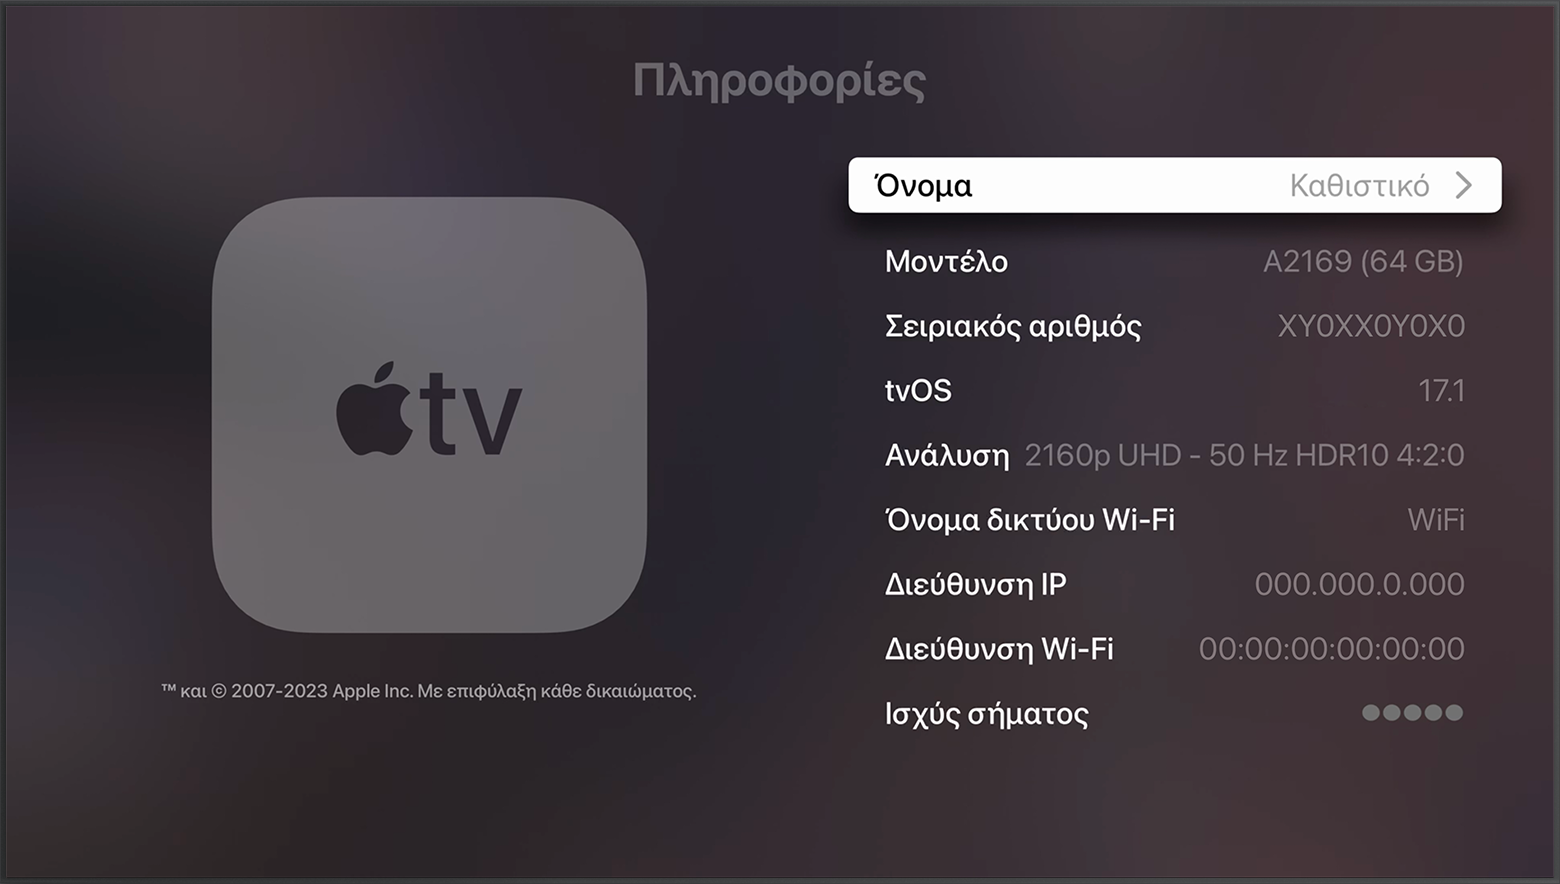 Ο σειριακός αριθμός εμφανίζεται κοντά στο επάνω μέρος της οθόνης «Πληροφορίες» στο Apple TV